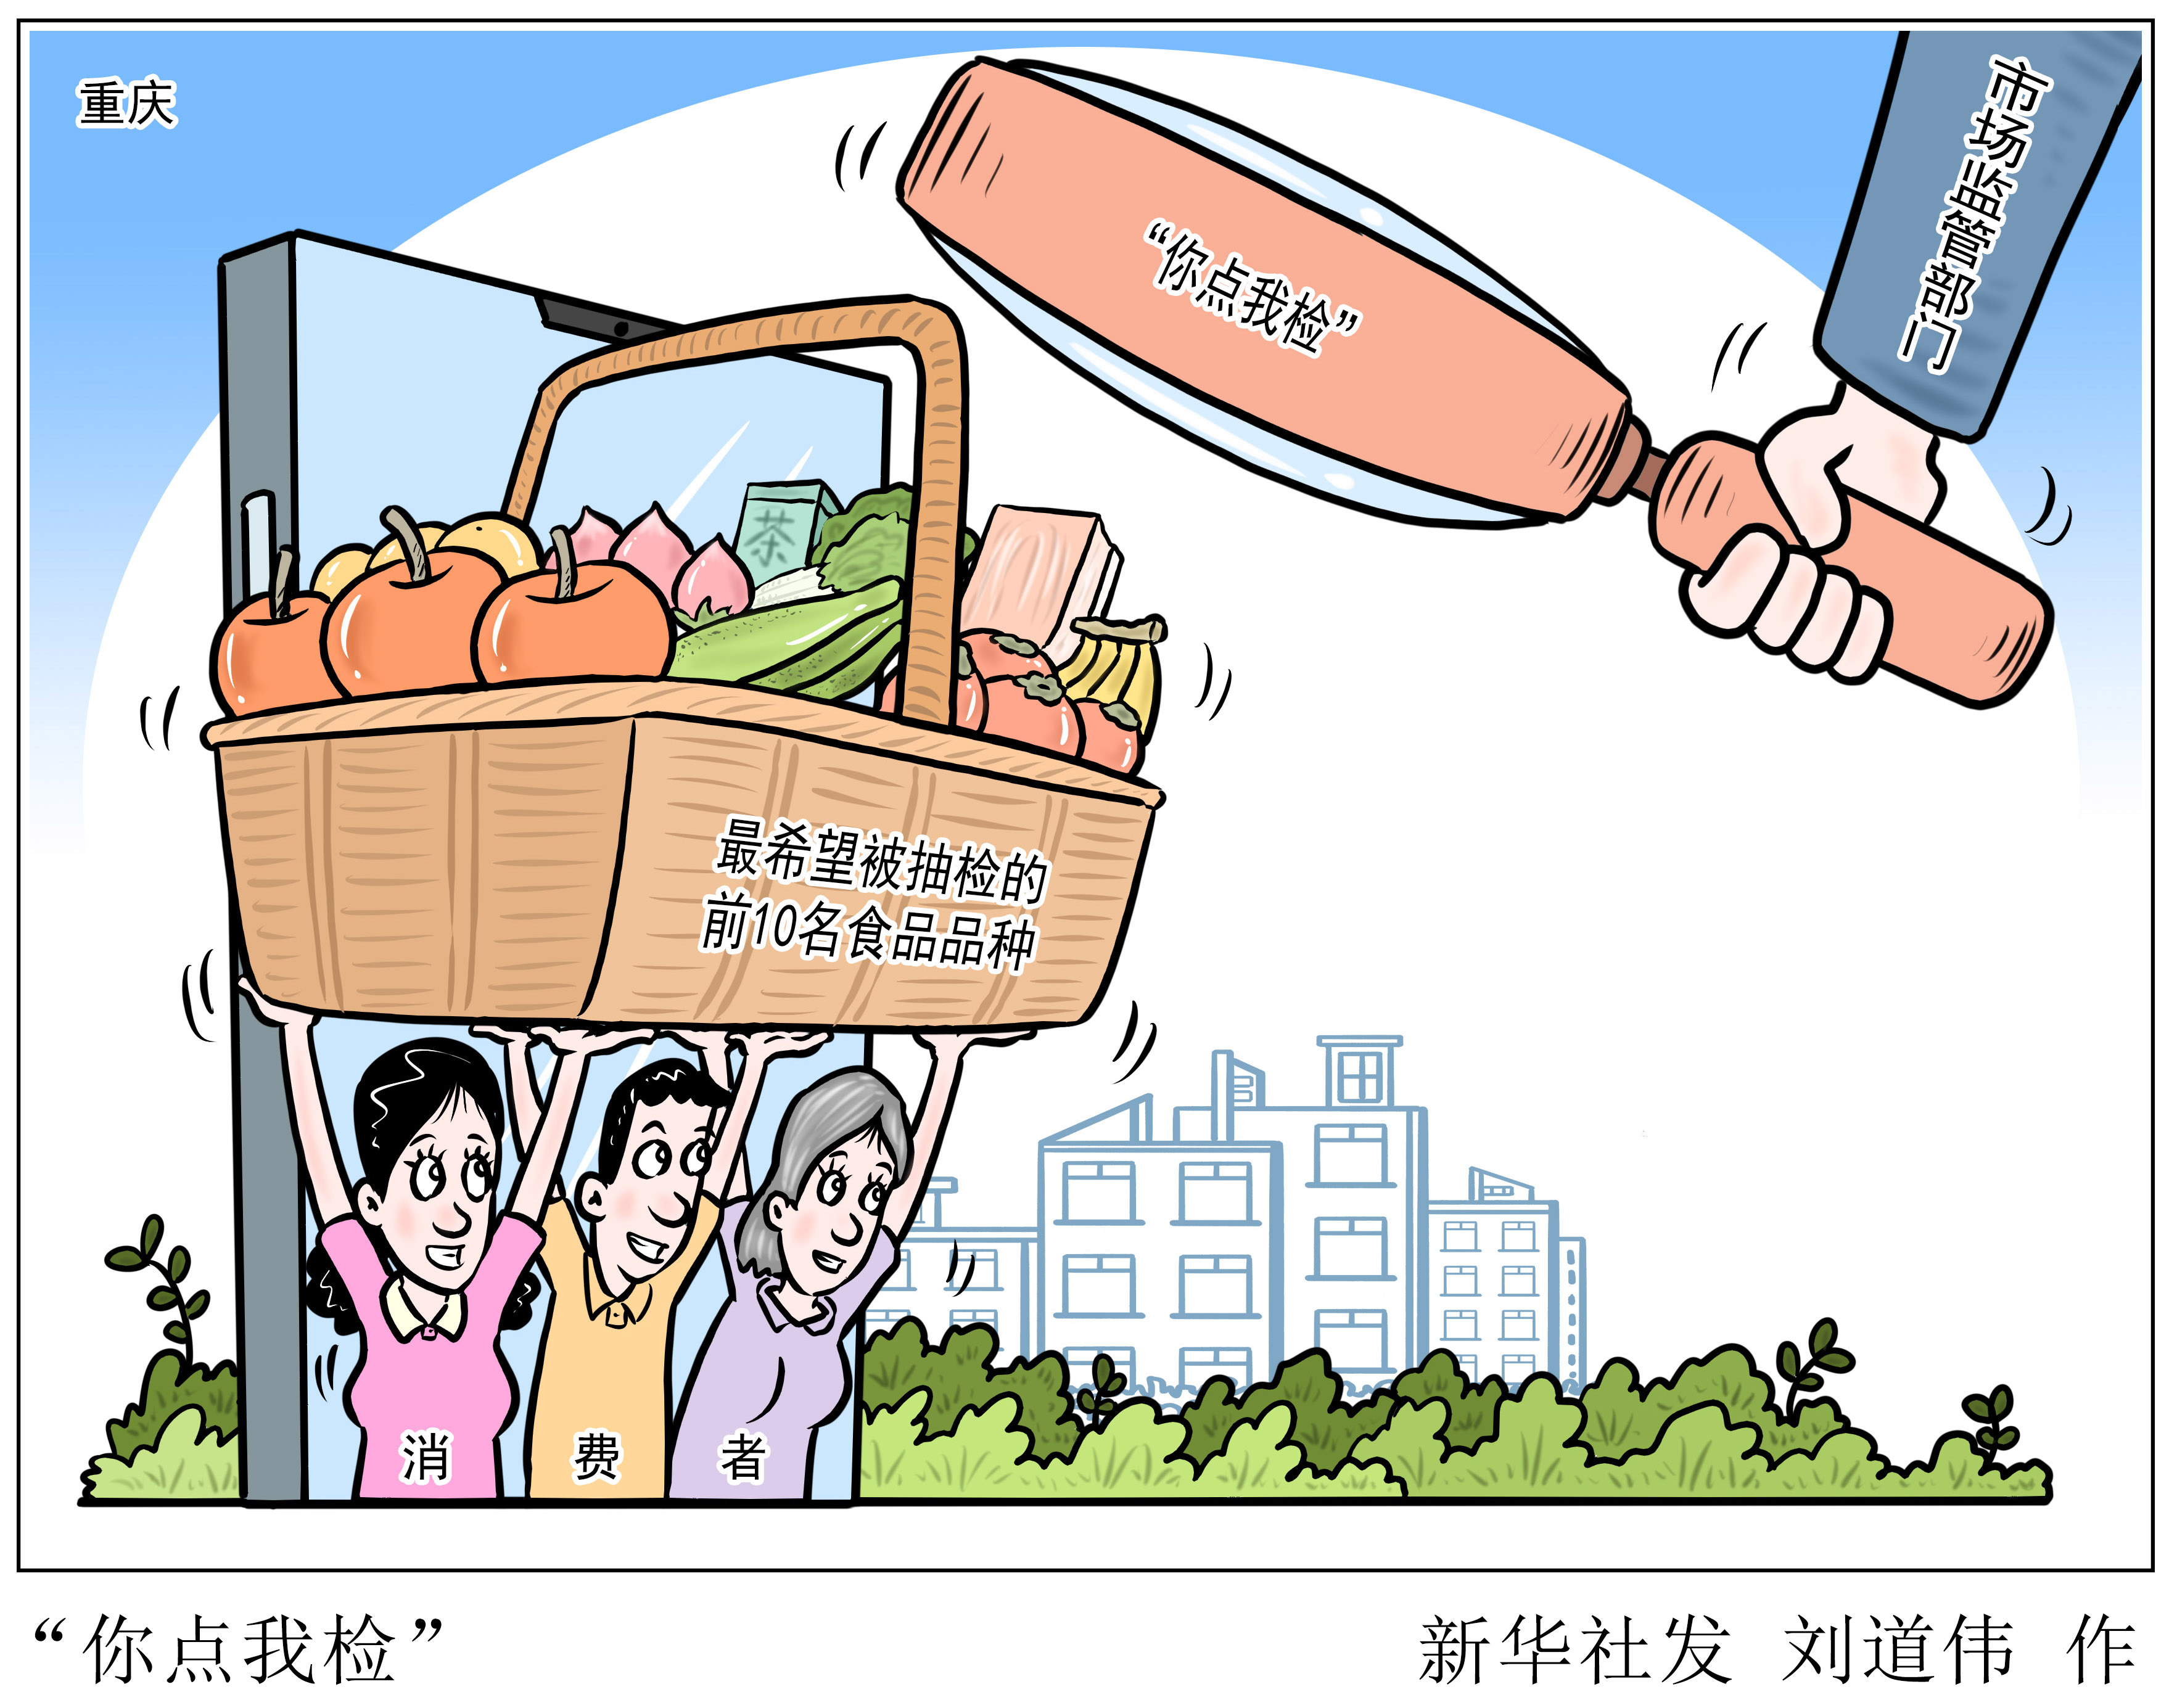 重庆市场监管部门推出食品安全你点我检活动 